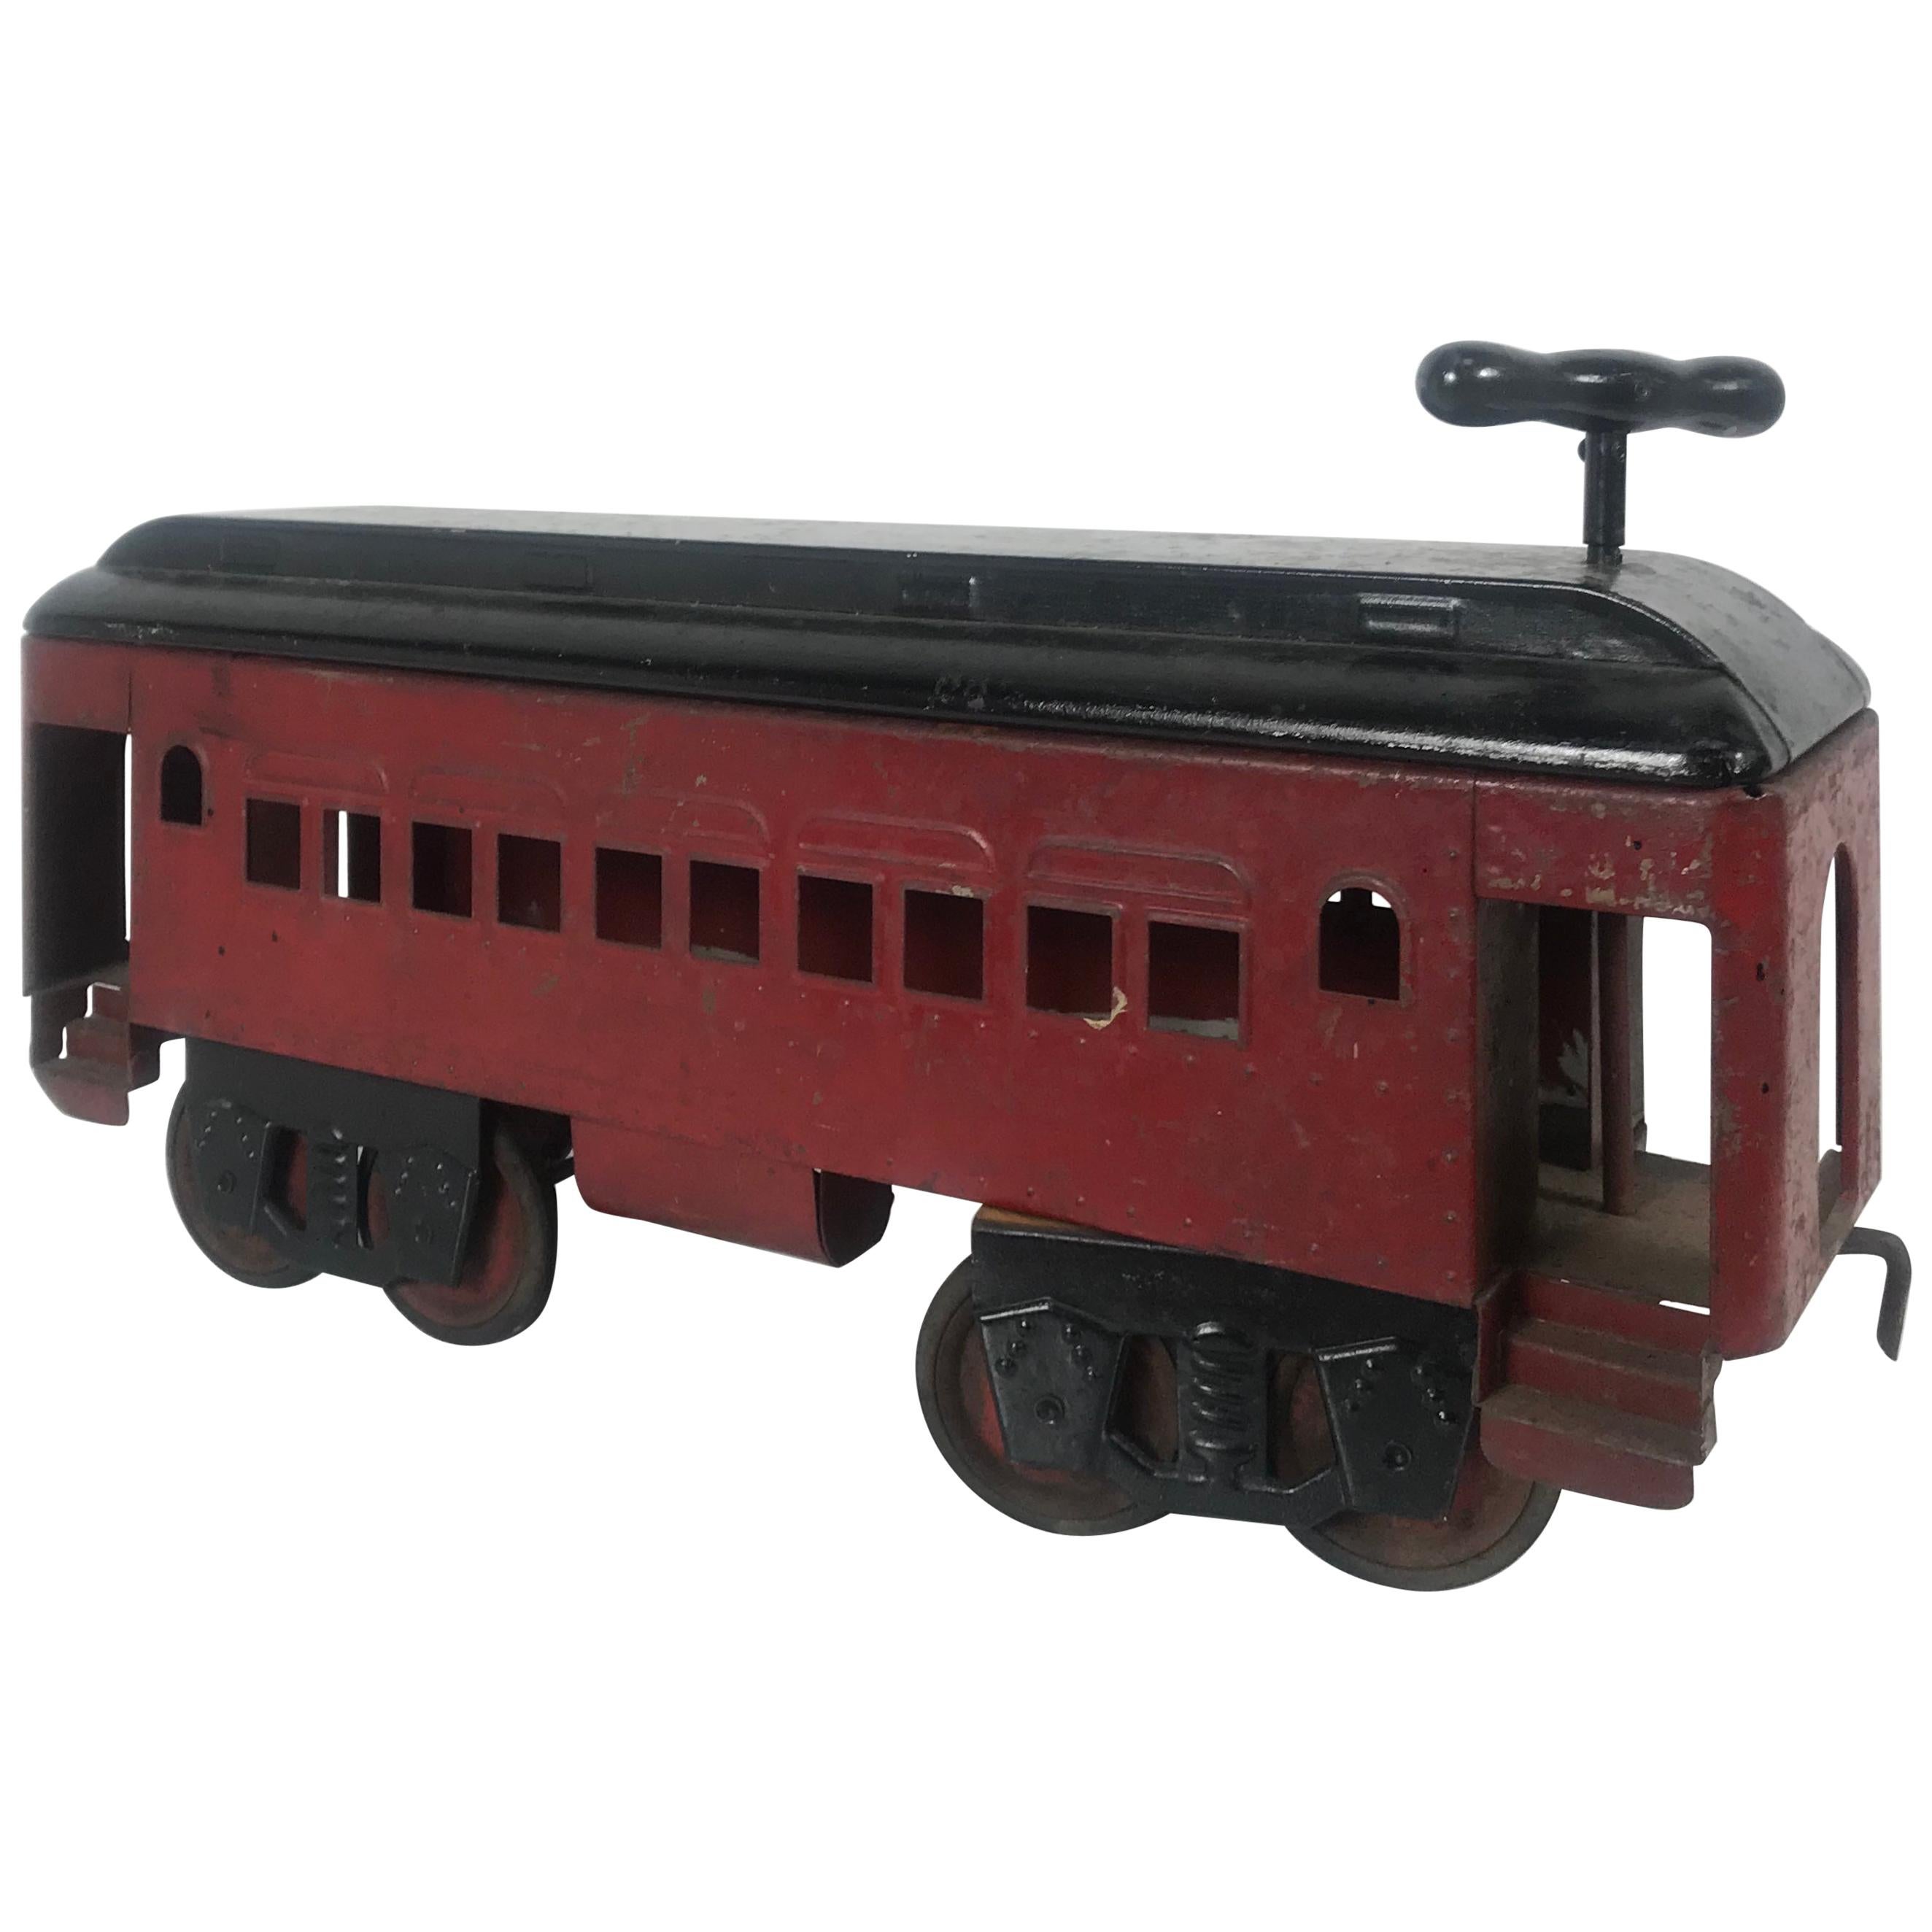 1920s Keystone Pullman Ride on Train / Trolly, Pressed Steel Toy